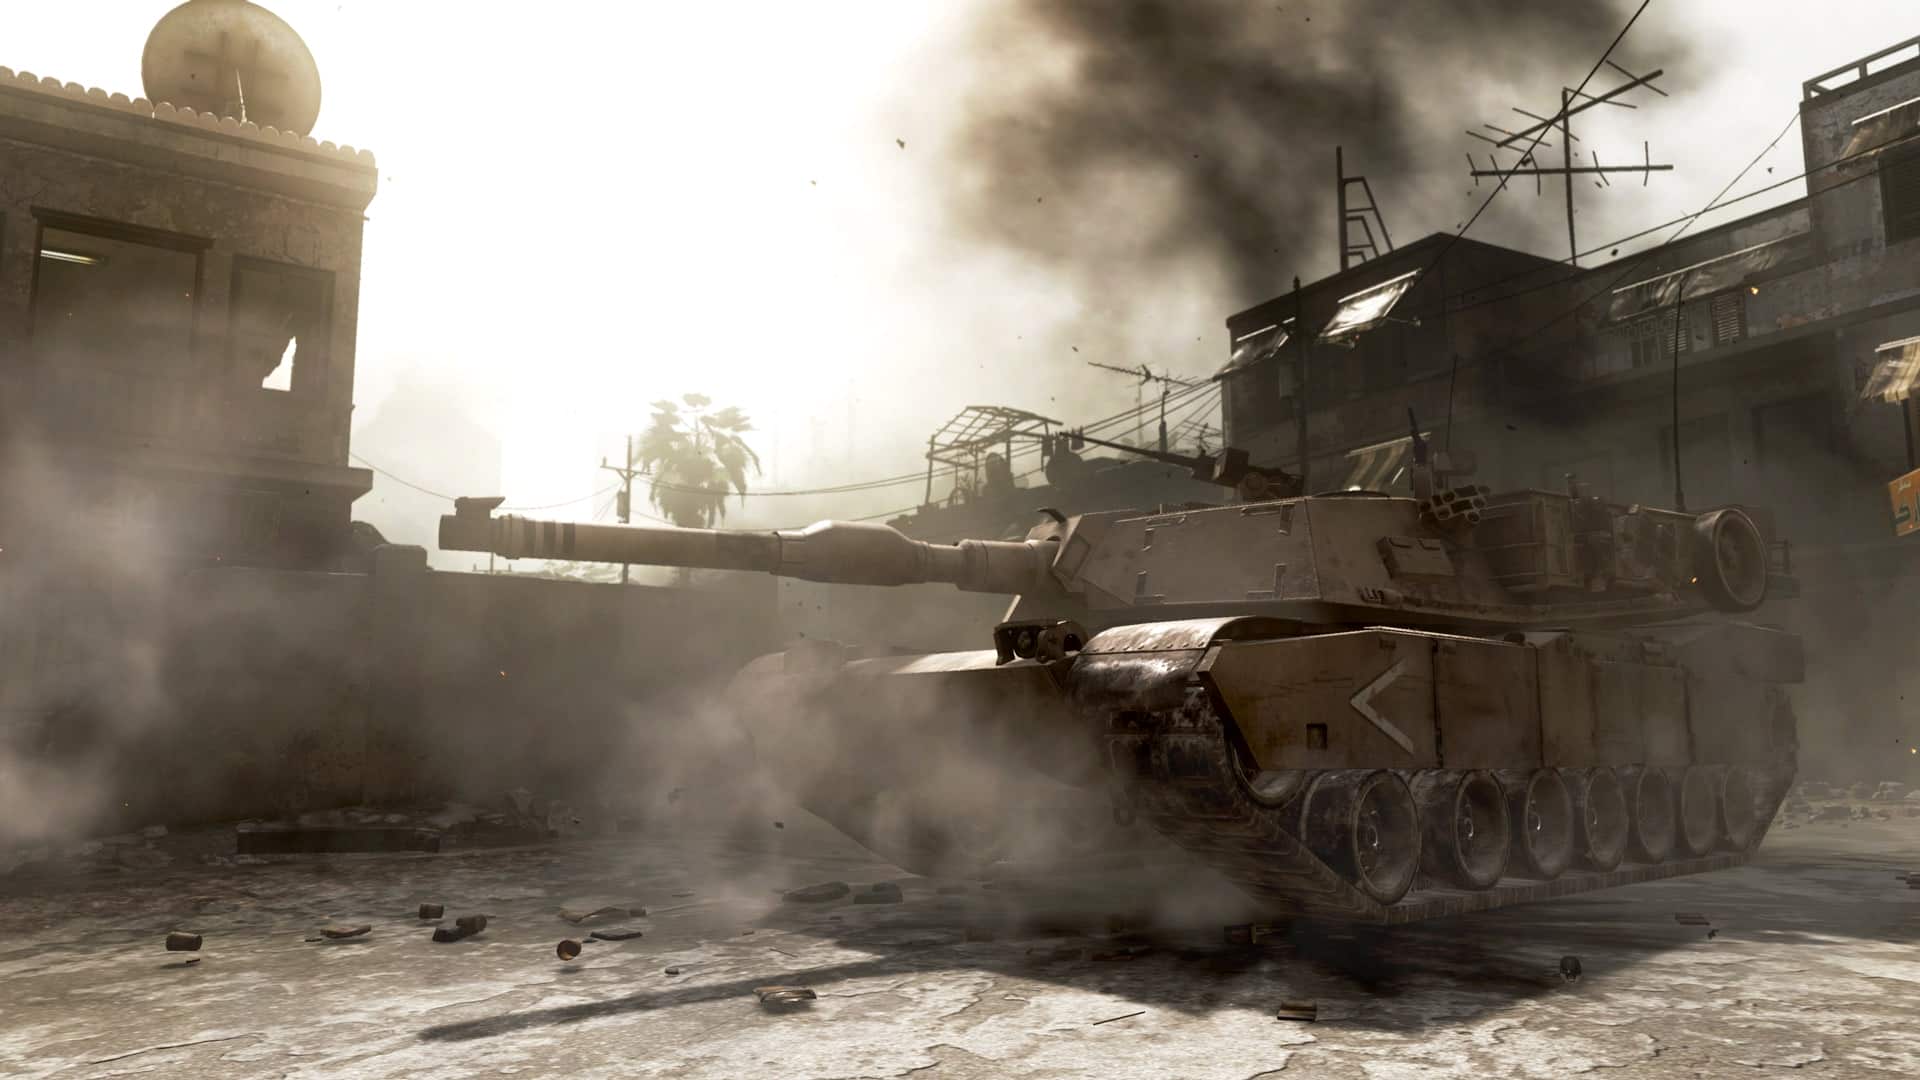  اکانت قانونی Call of Duty: Modern Warfare Remastered برای PS4 & PS5 